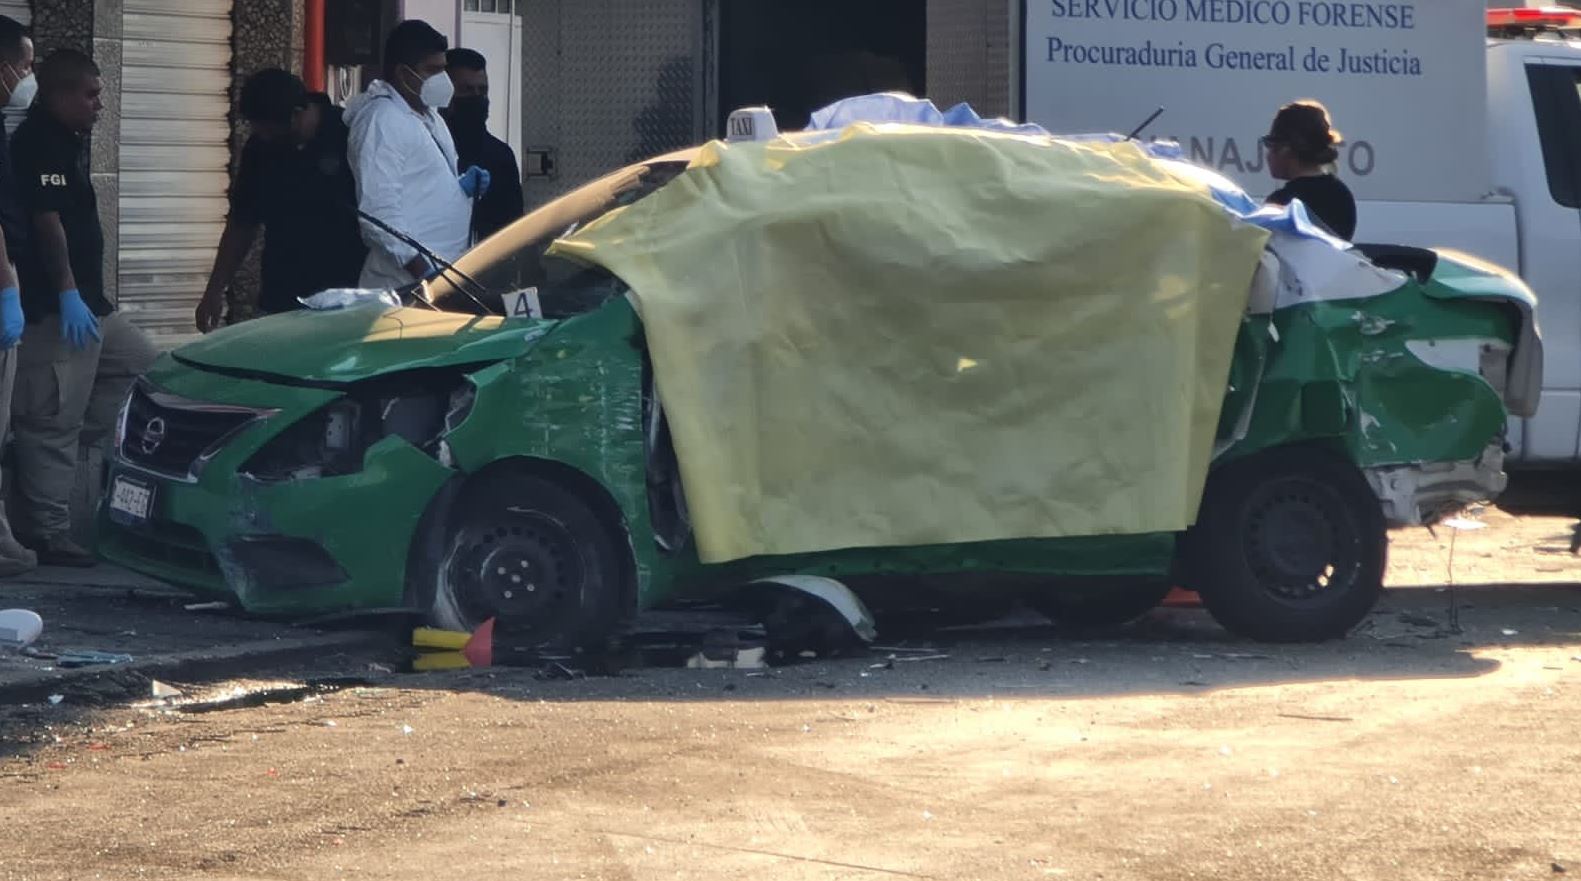 Indignación En Guanajuato Por Choque Automovilístico En El Que Fallecieron Cinco Mujeres De La